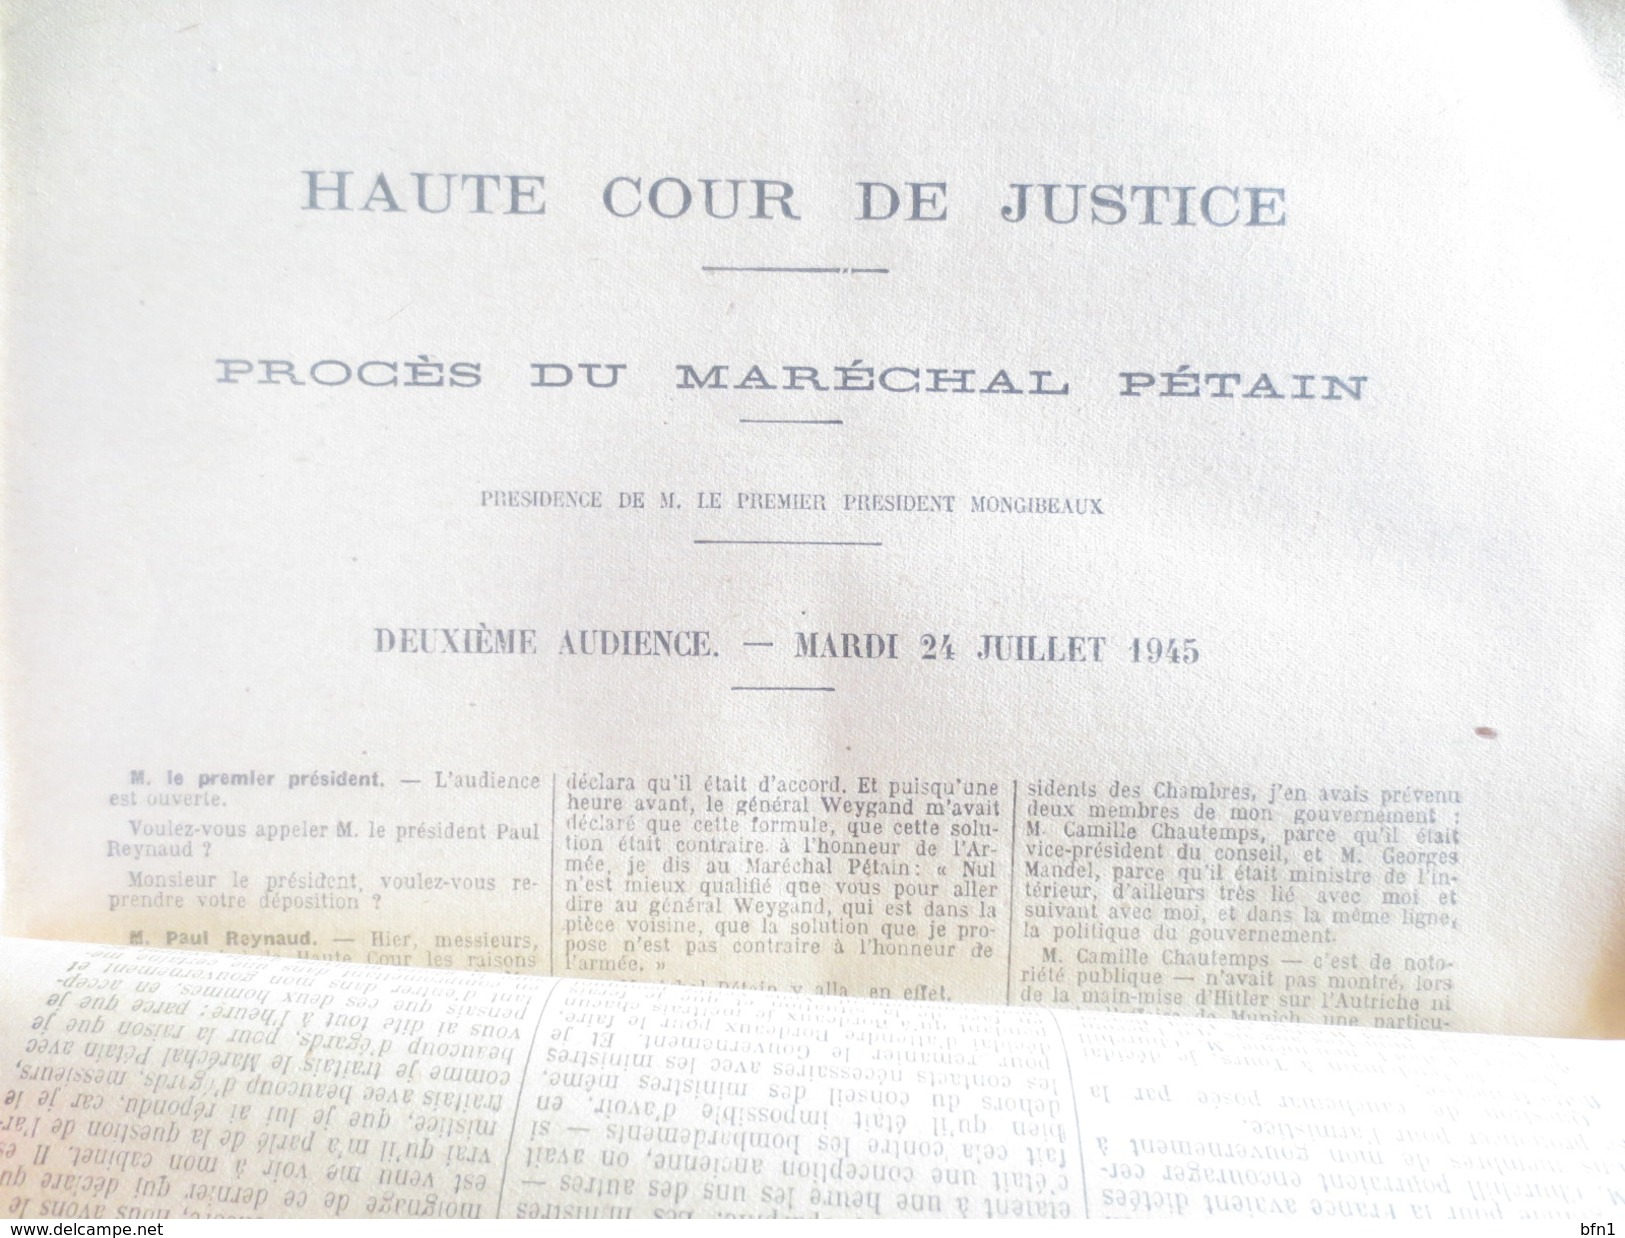 Haute Cour De Justice - 1945- Proces Du Marechal Petain - Compte Rendu In Extenso Des Audiences COMPLET - VOIR PHOTOS